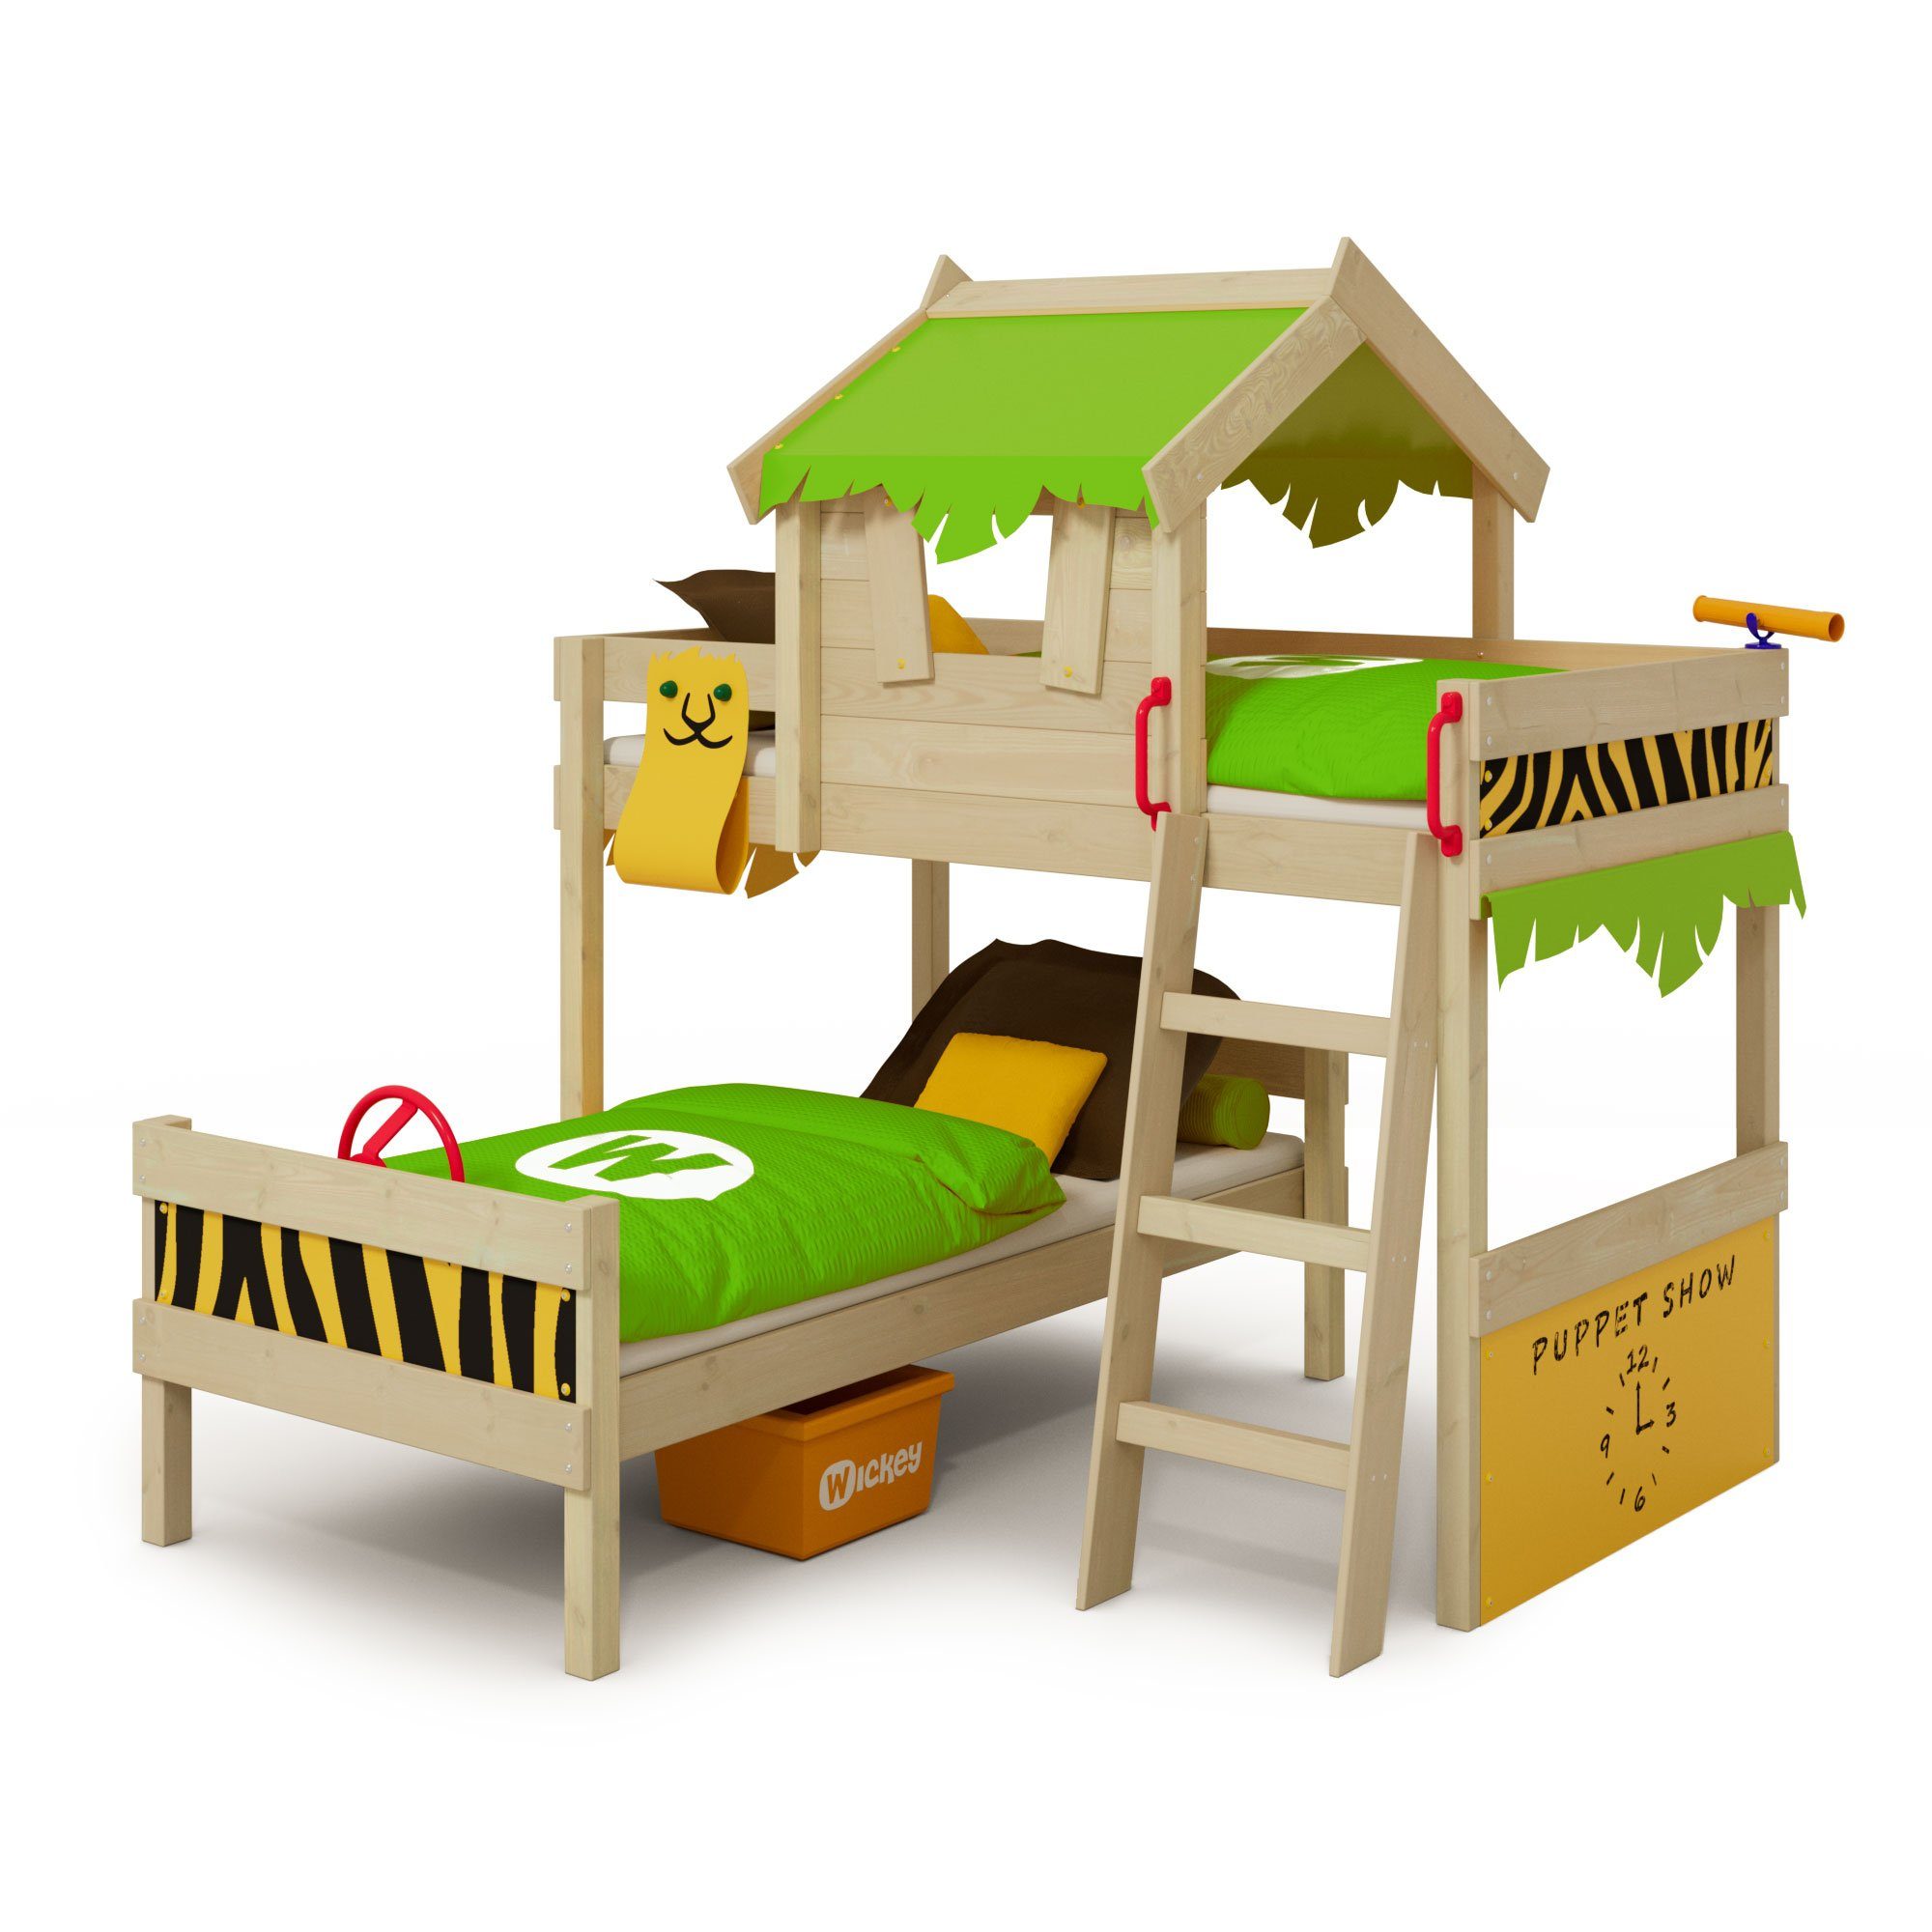 Wickey Kinderbett Crazy Jungle, Spielbett, 90 x 200 cm Hochbett (Holzpaket aus Pfosten und Brettern, Spielbett für Kinder), Massivholzbrett apfelgrün/gelb